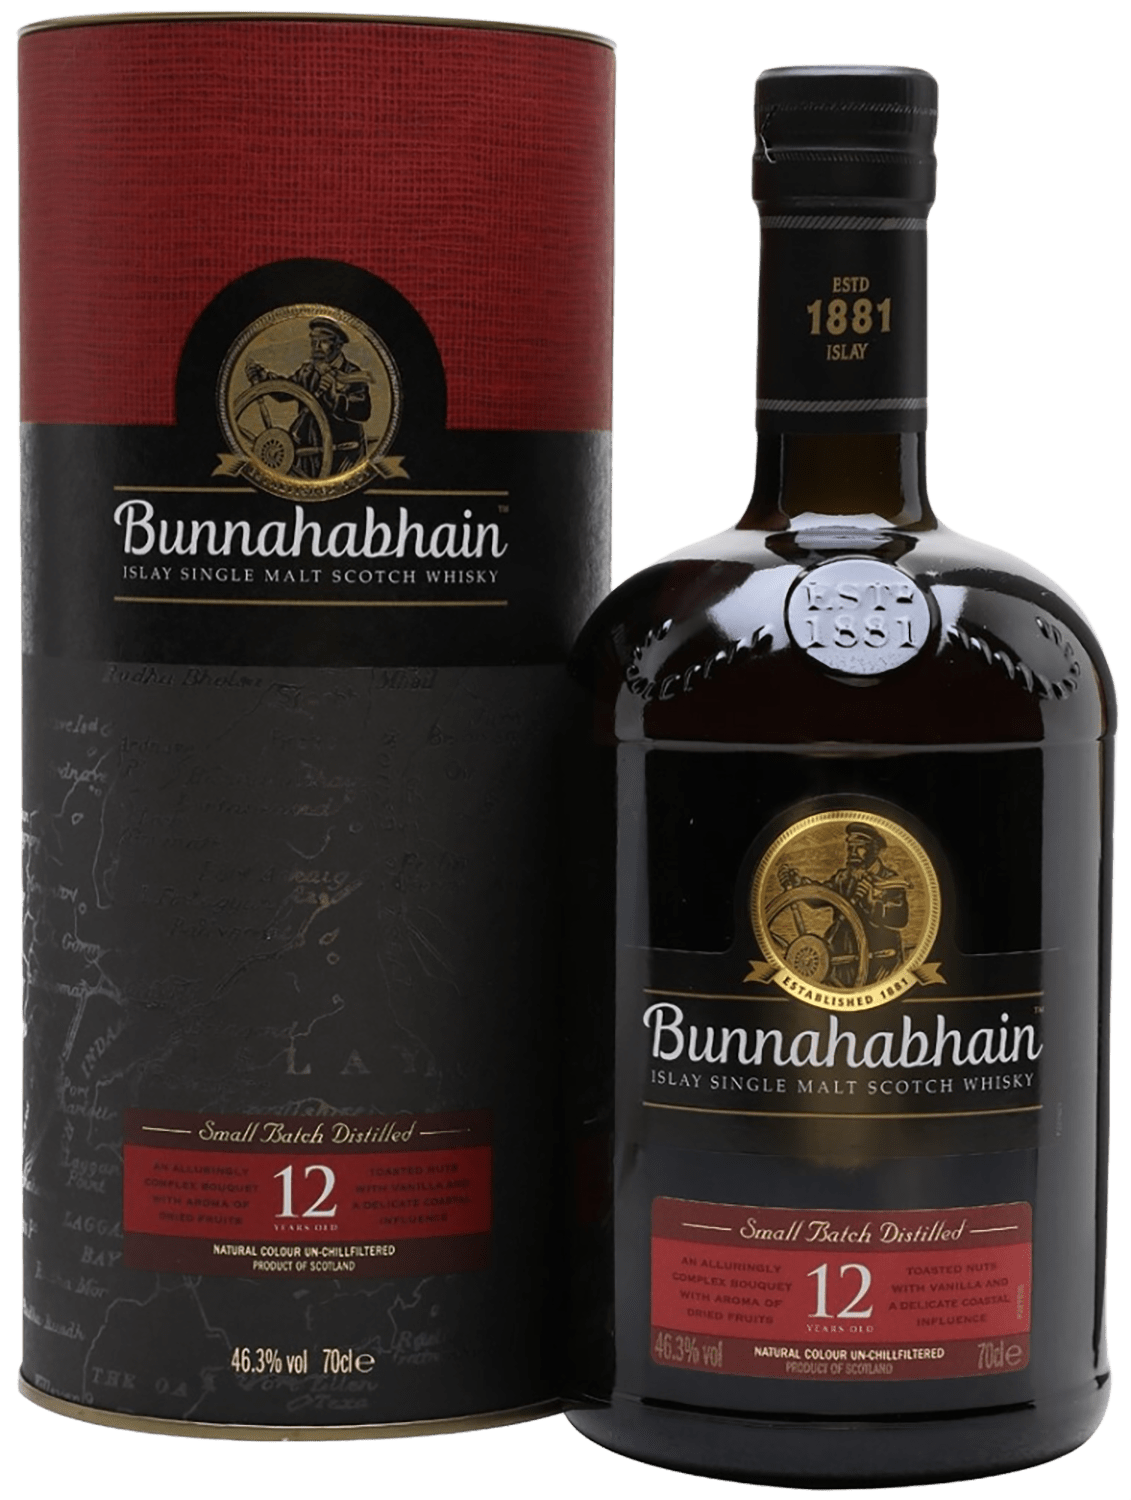 Bunnahabhain Islay Single Malt Scotch Whisky 12 y.o. (gift box)